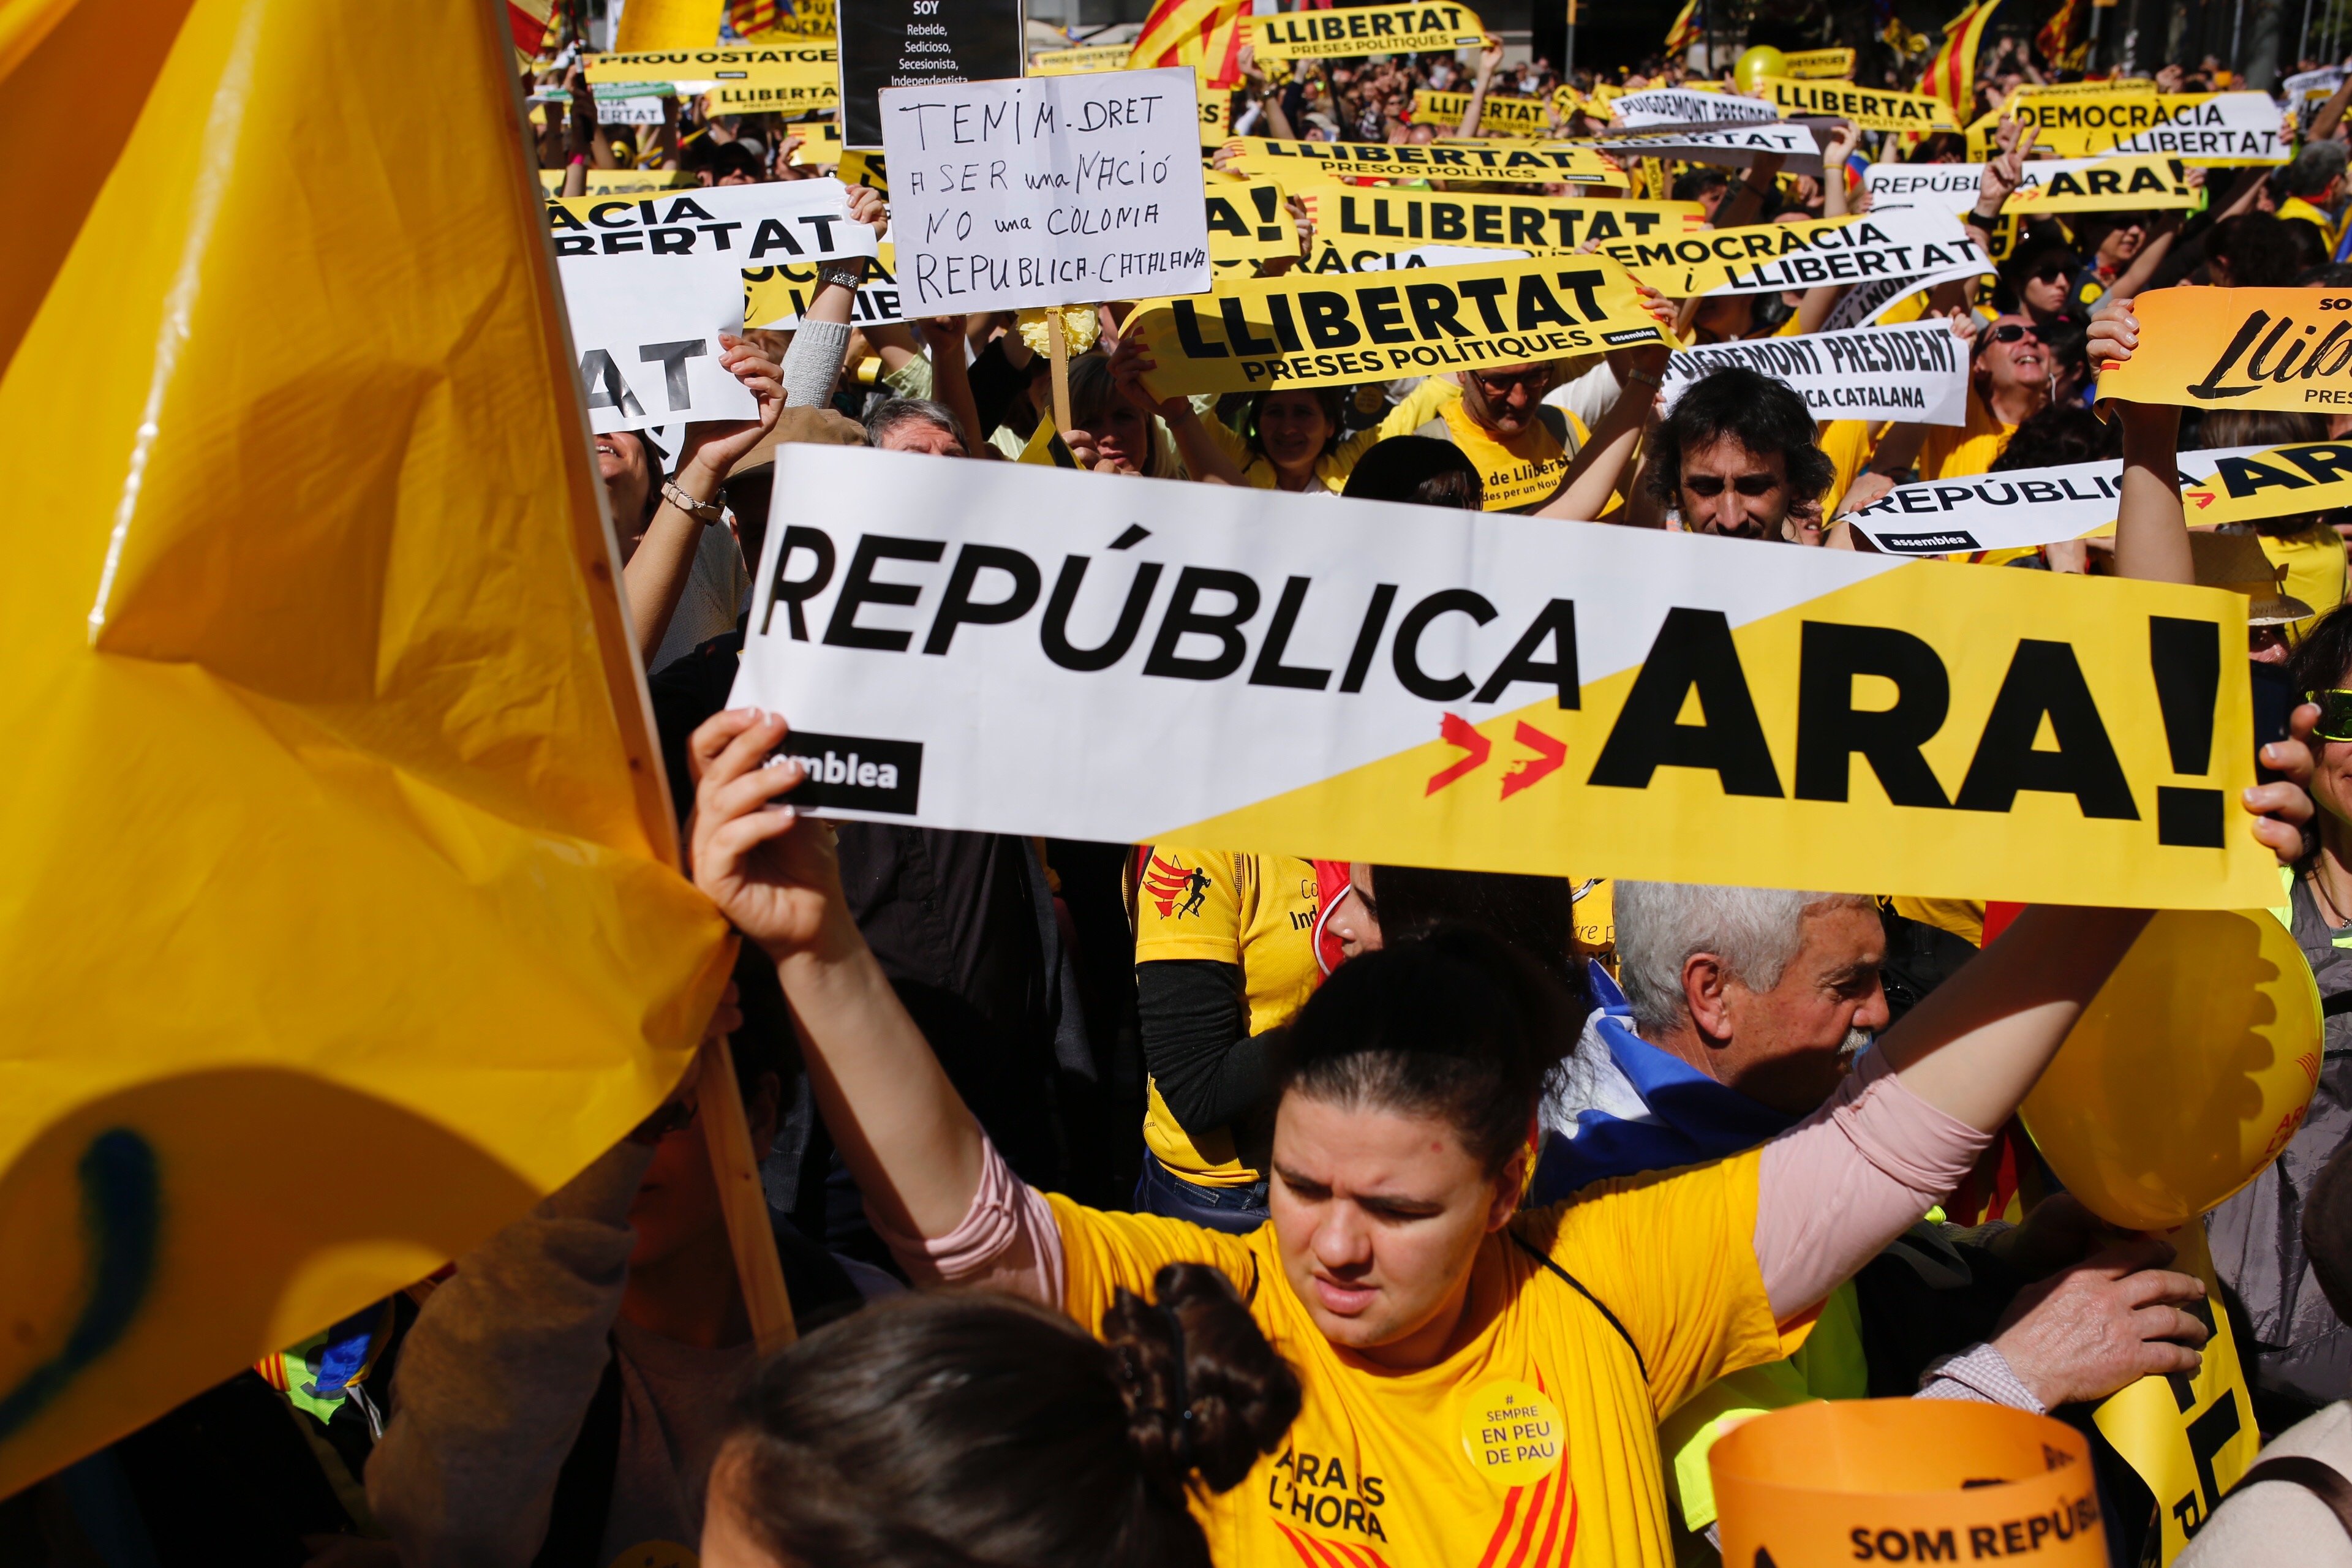 ¿Crees que la manifestación ha mostrado a Europa cómo es Catalunya?